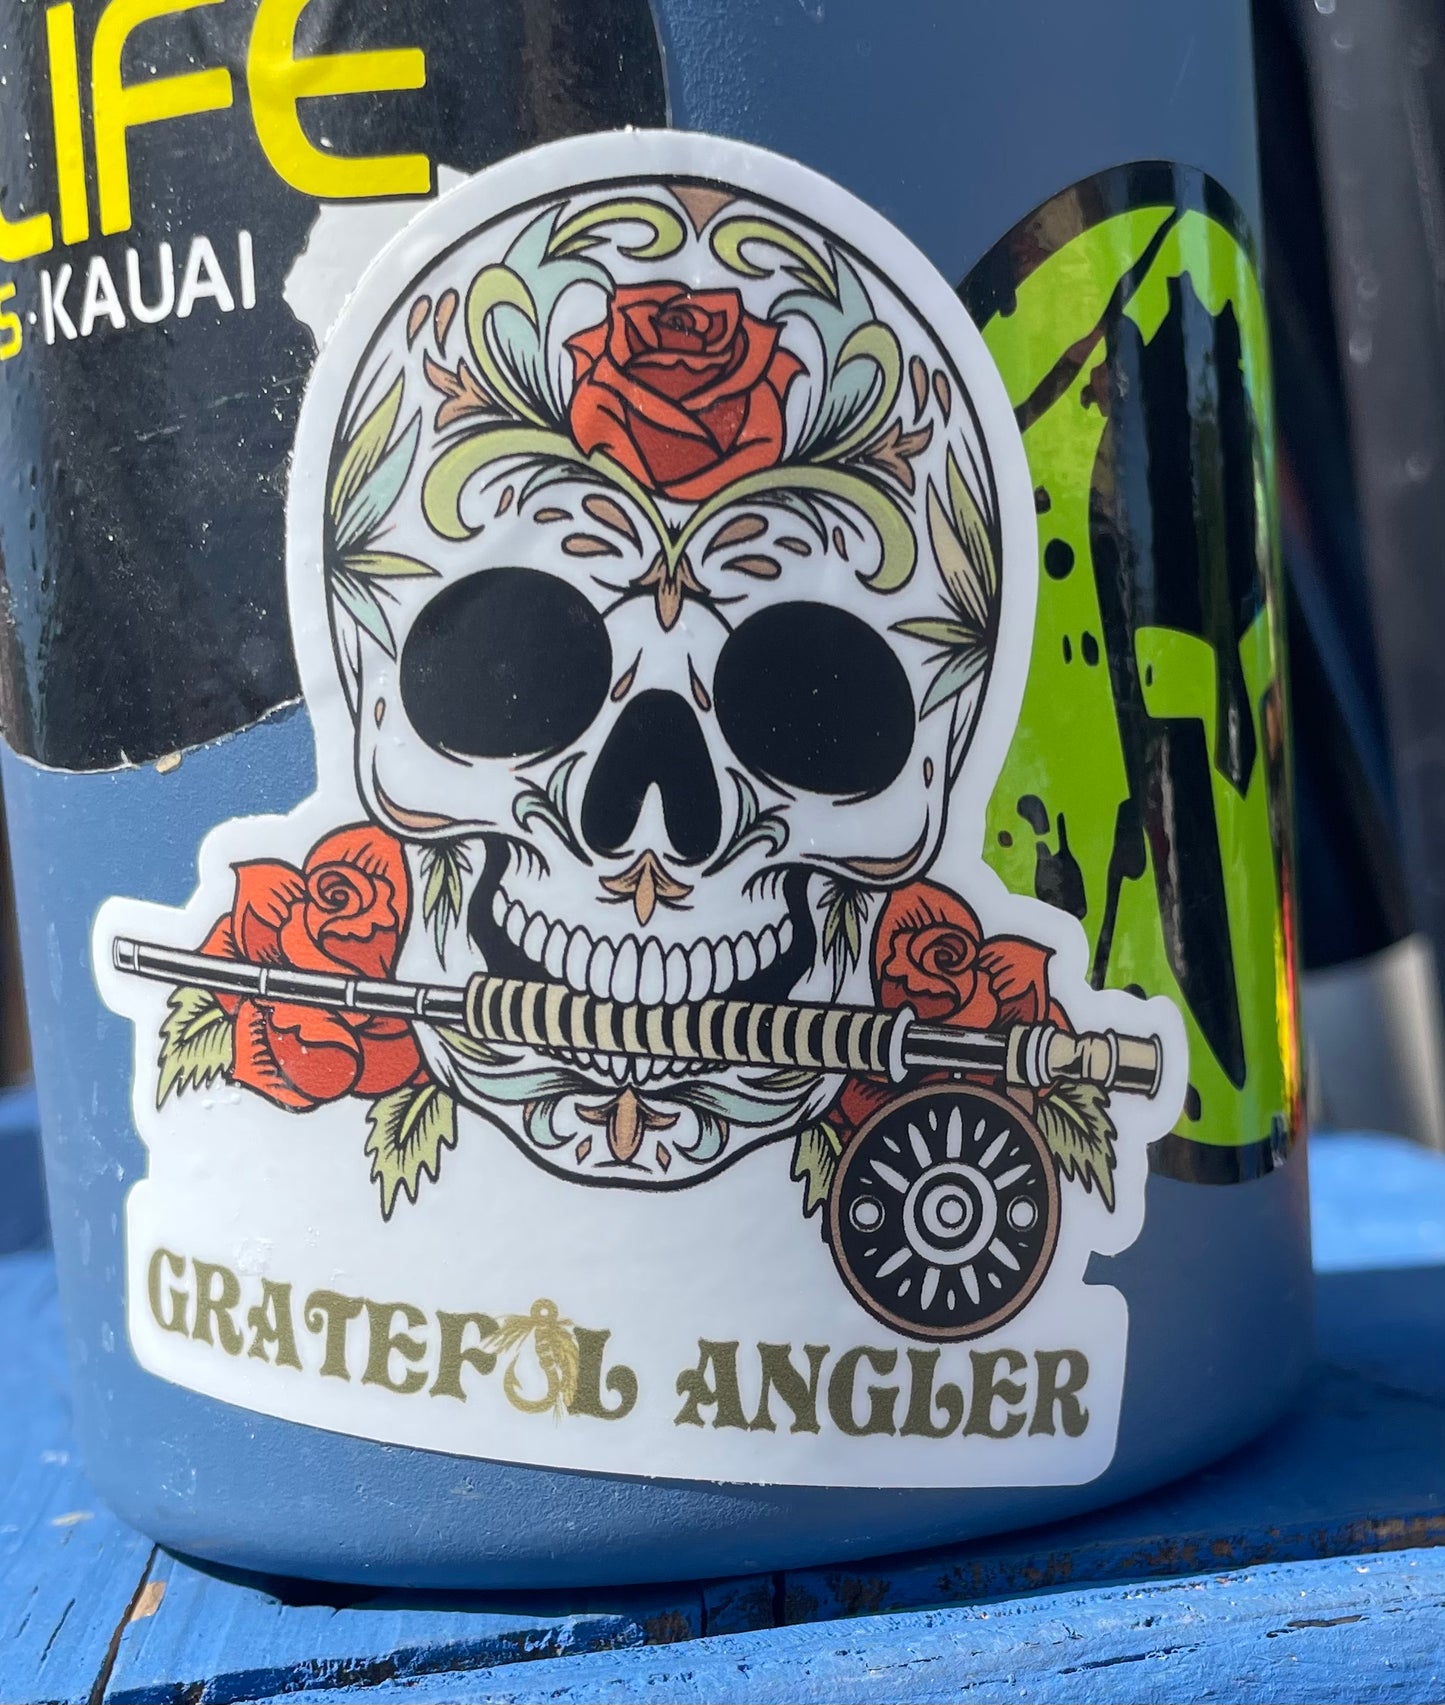 Grateful Angler Sugar Skull Sticker